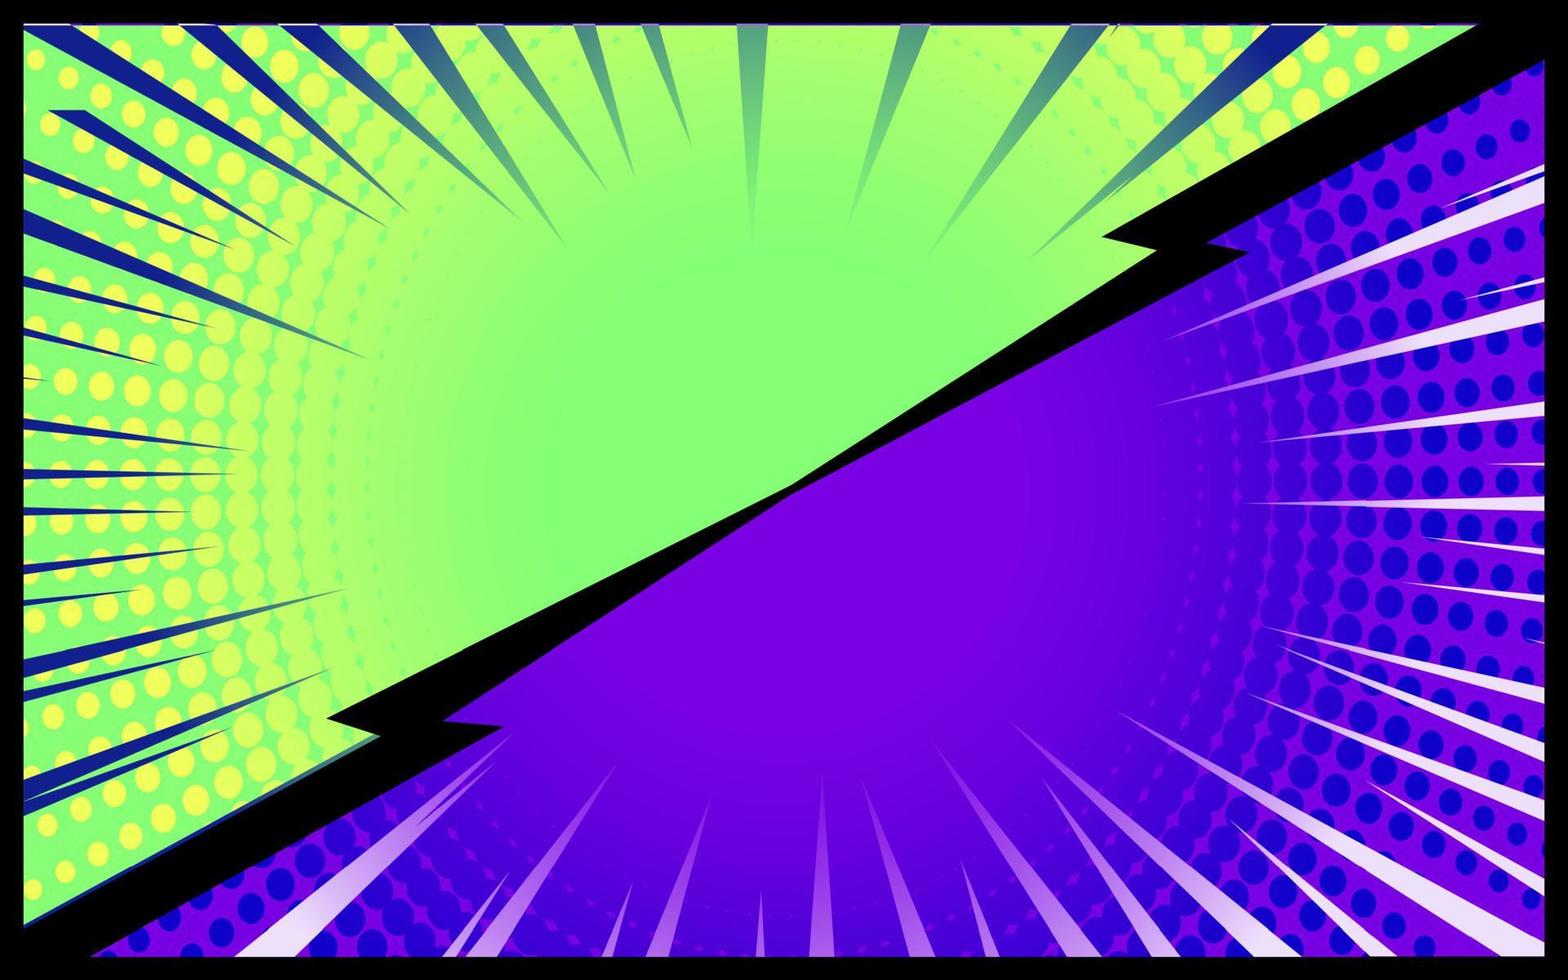 Retro-Vektor des grünen und purpurroten komischen Hintergrundes vektor